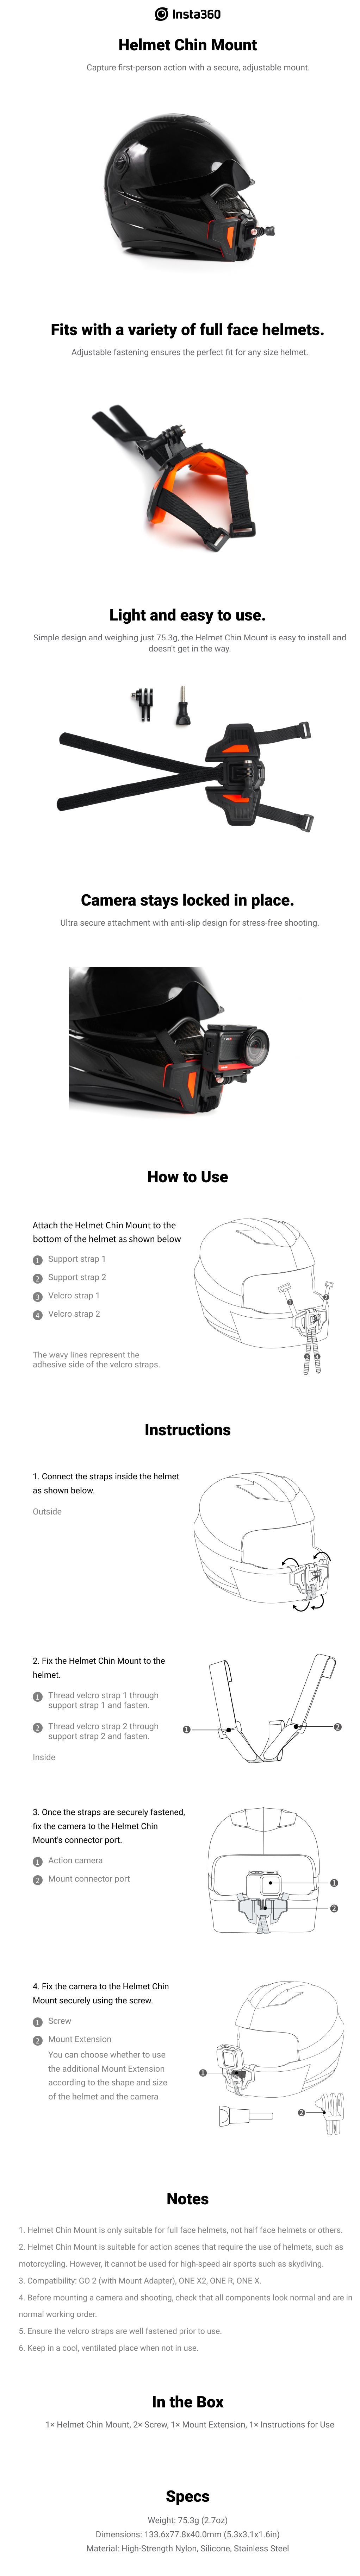 Insta360-Helmet-Chin-Mount.jpg (434 KB)